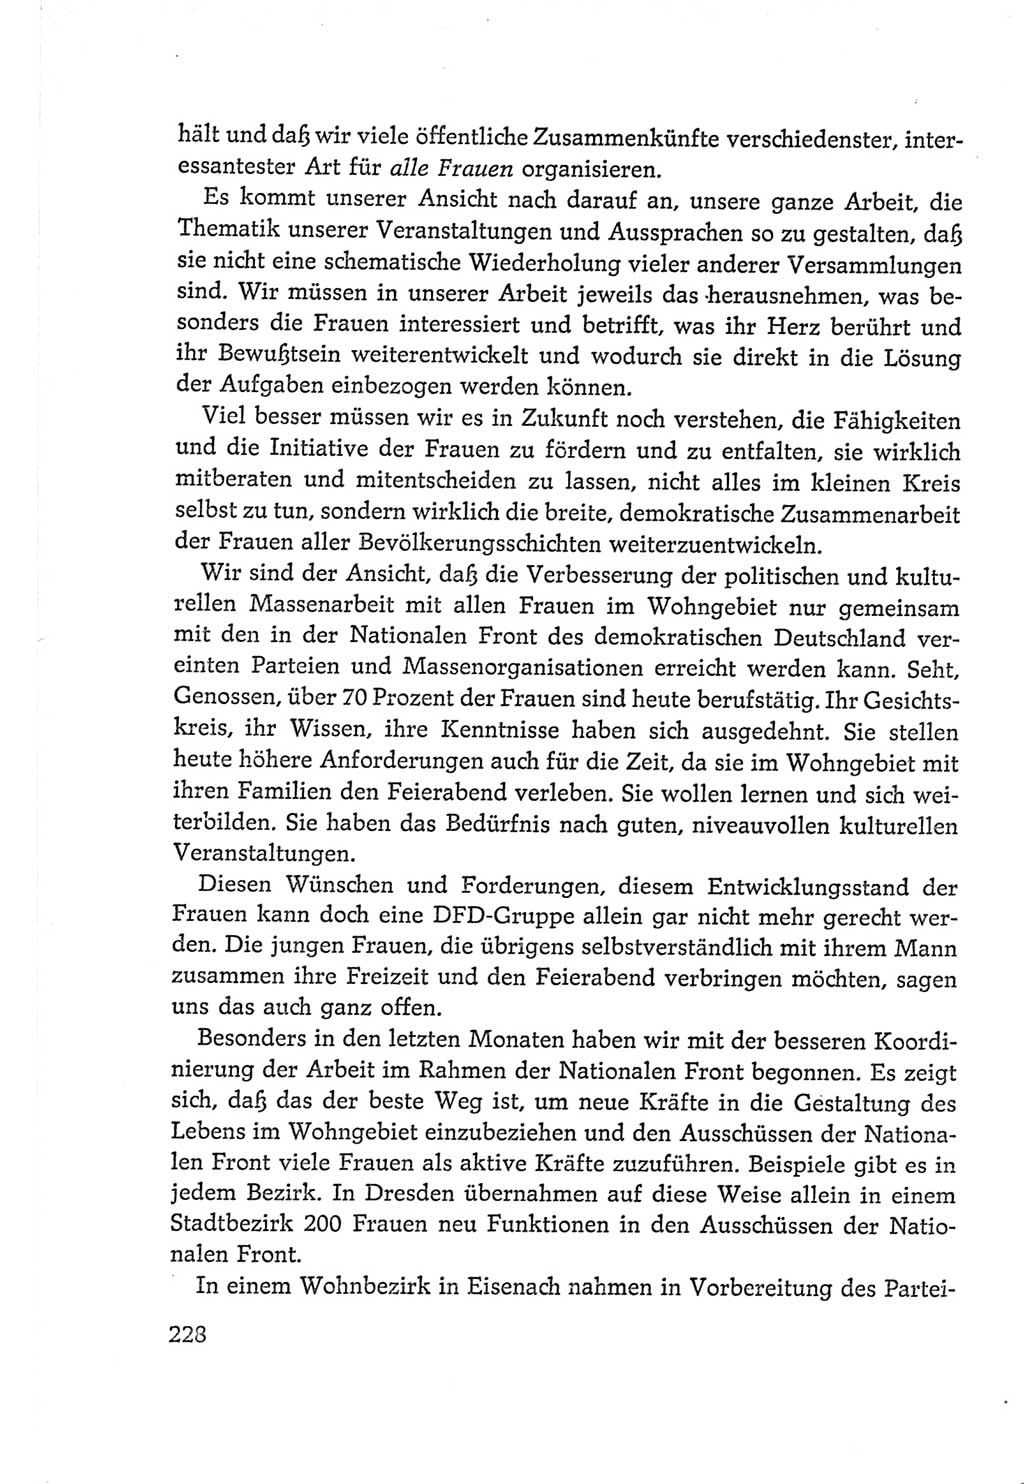 Protokoll der Verhandlungen des Ⅵ. Parteitages der Sozialistischen Einheitspartei Deutschlands (SED) [Deutsche Demokratische Republik (DDR)] 1963, Band Ⅱ, Seite 228 (Prot. Verh. Ⅵ. PT SED DDR 1963, Bd. Ⅱ, S. 228)